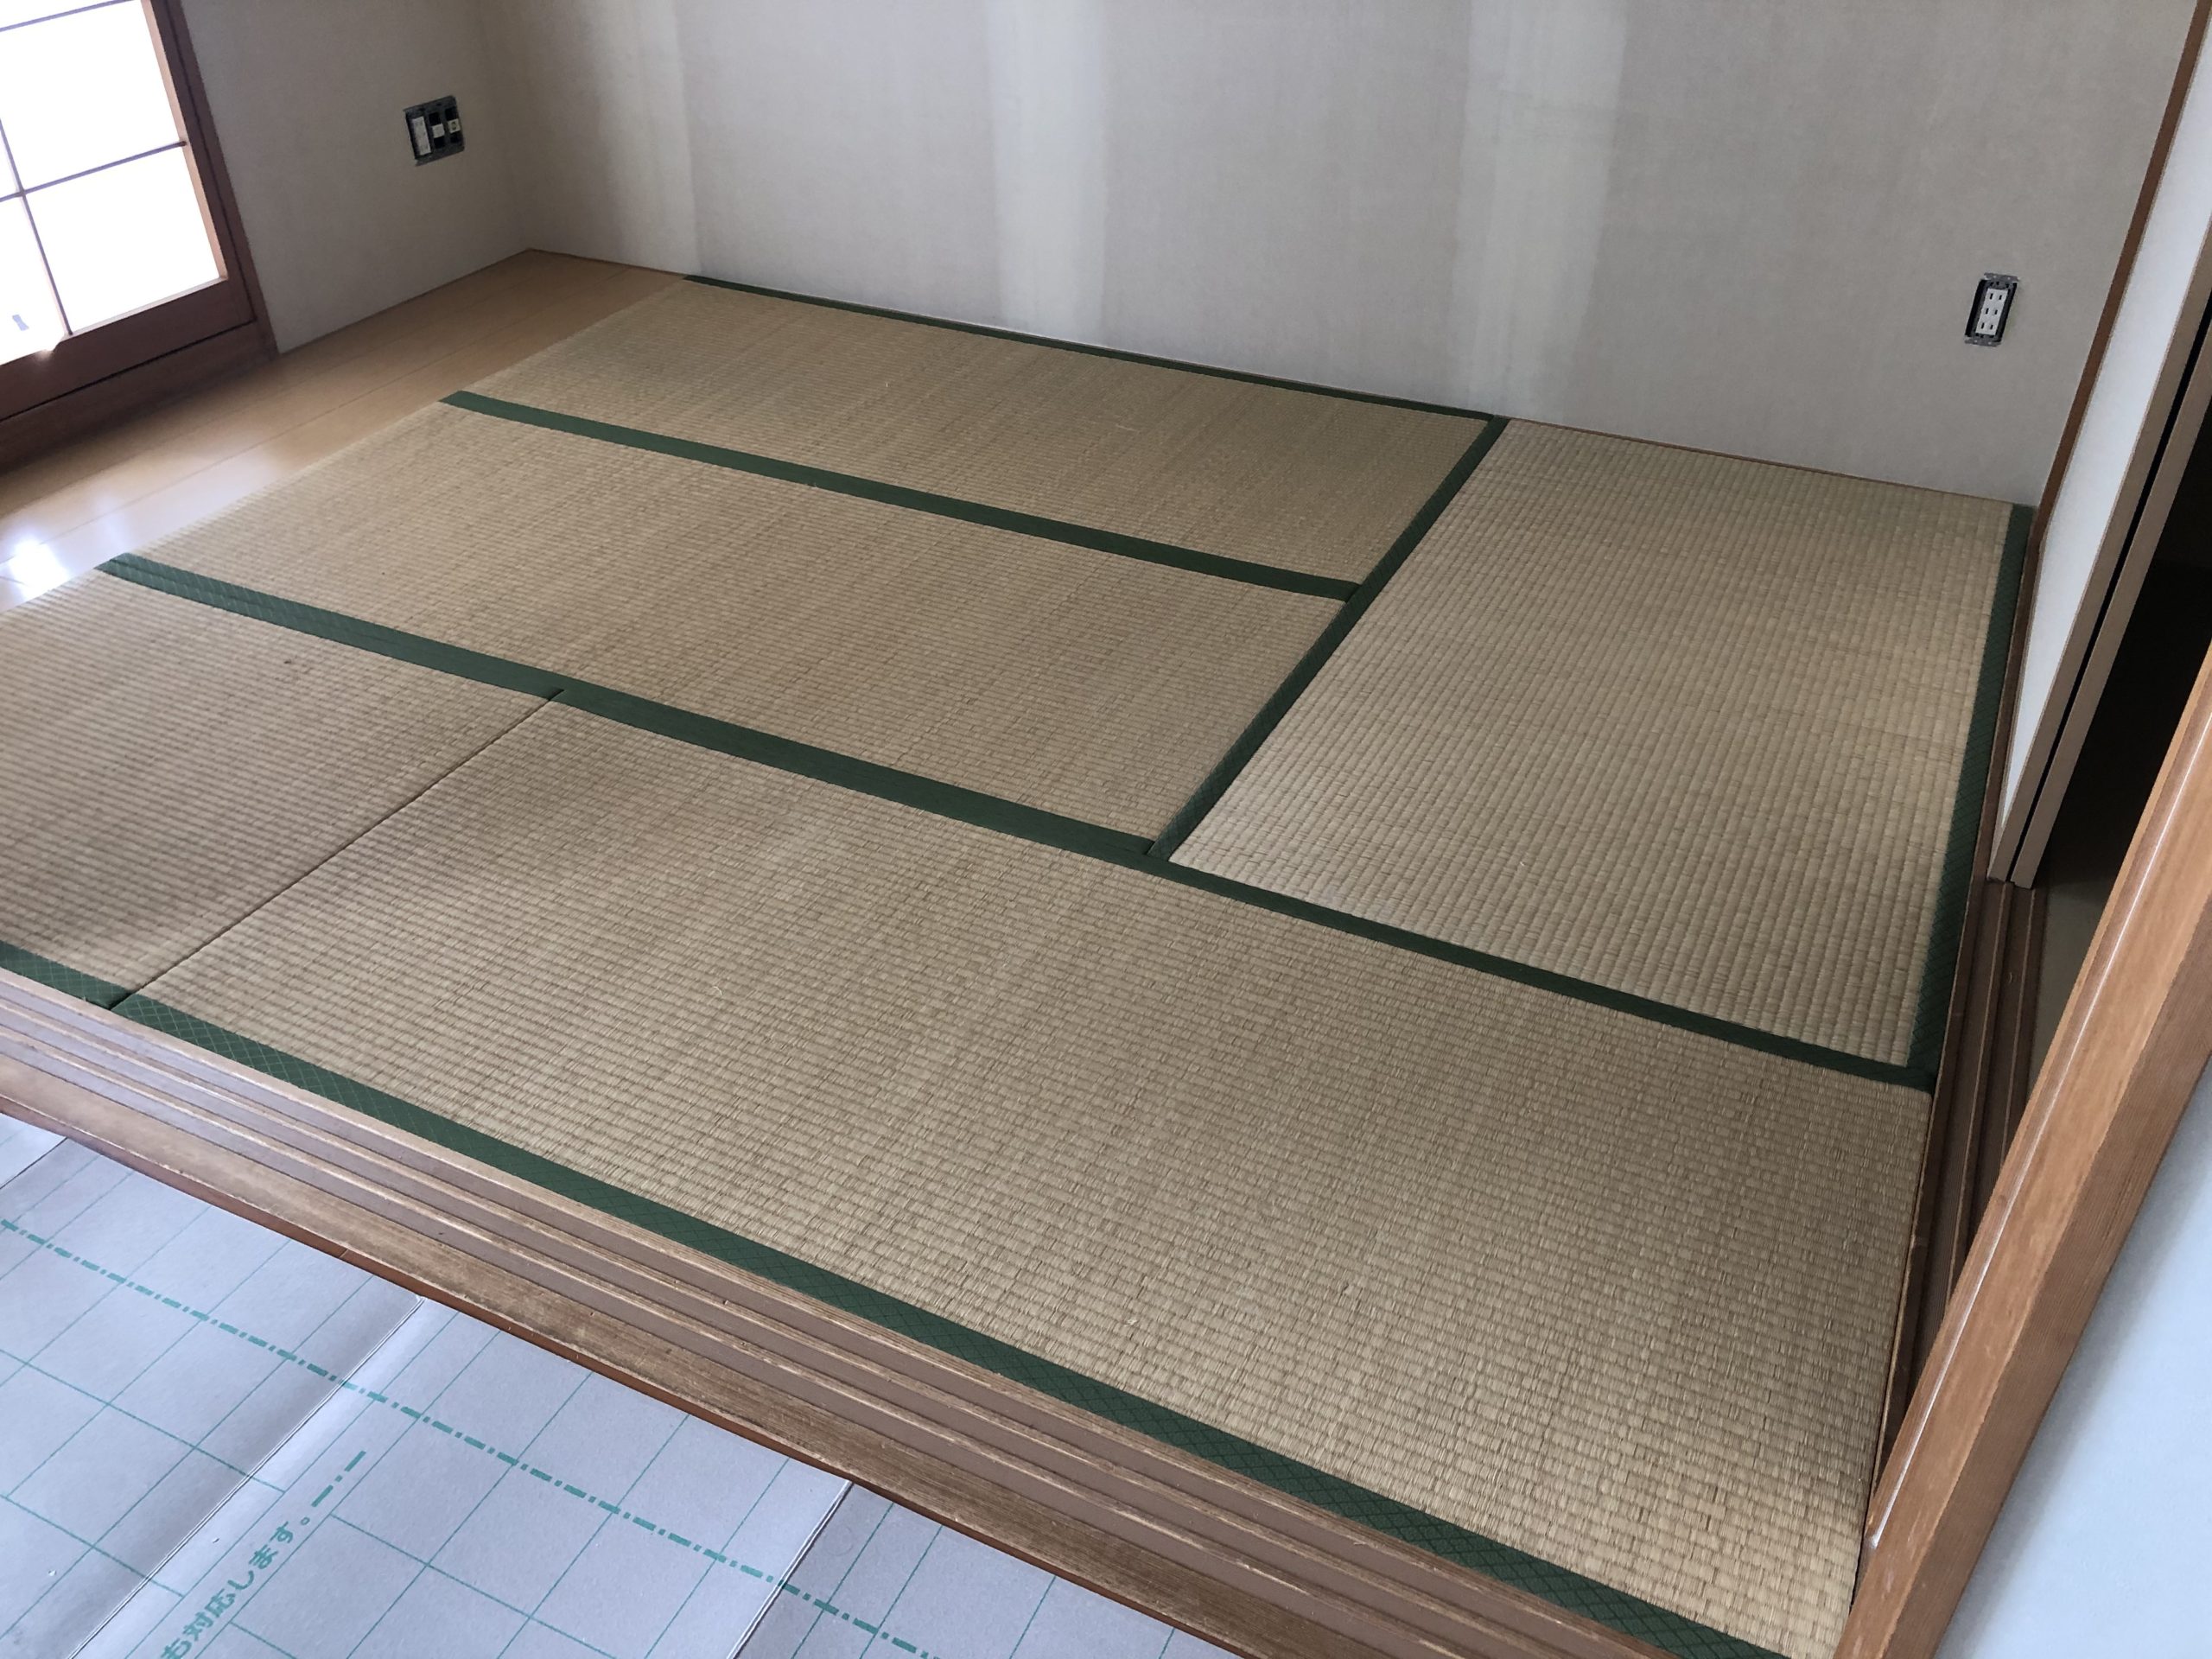 古い和室を新素材の琉球畳でステキにリノベーション